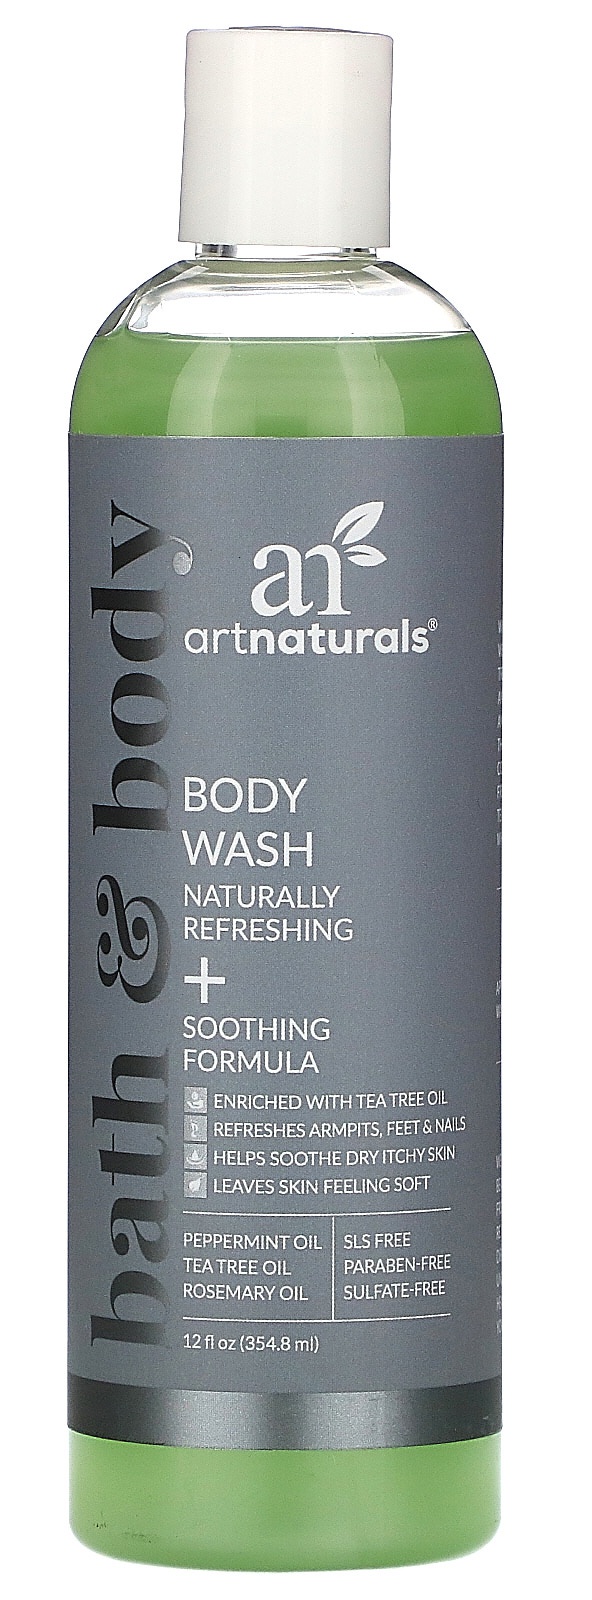 artnaturals Body Wash, Naturally Refreshing + Soothing